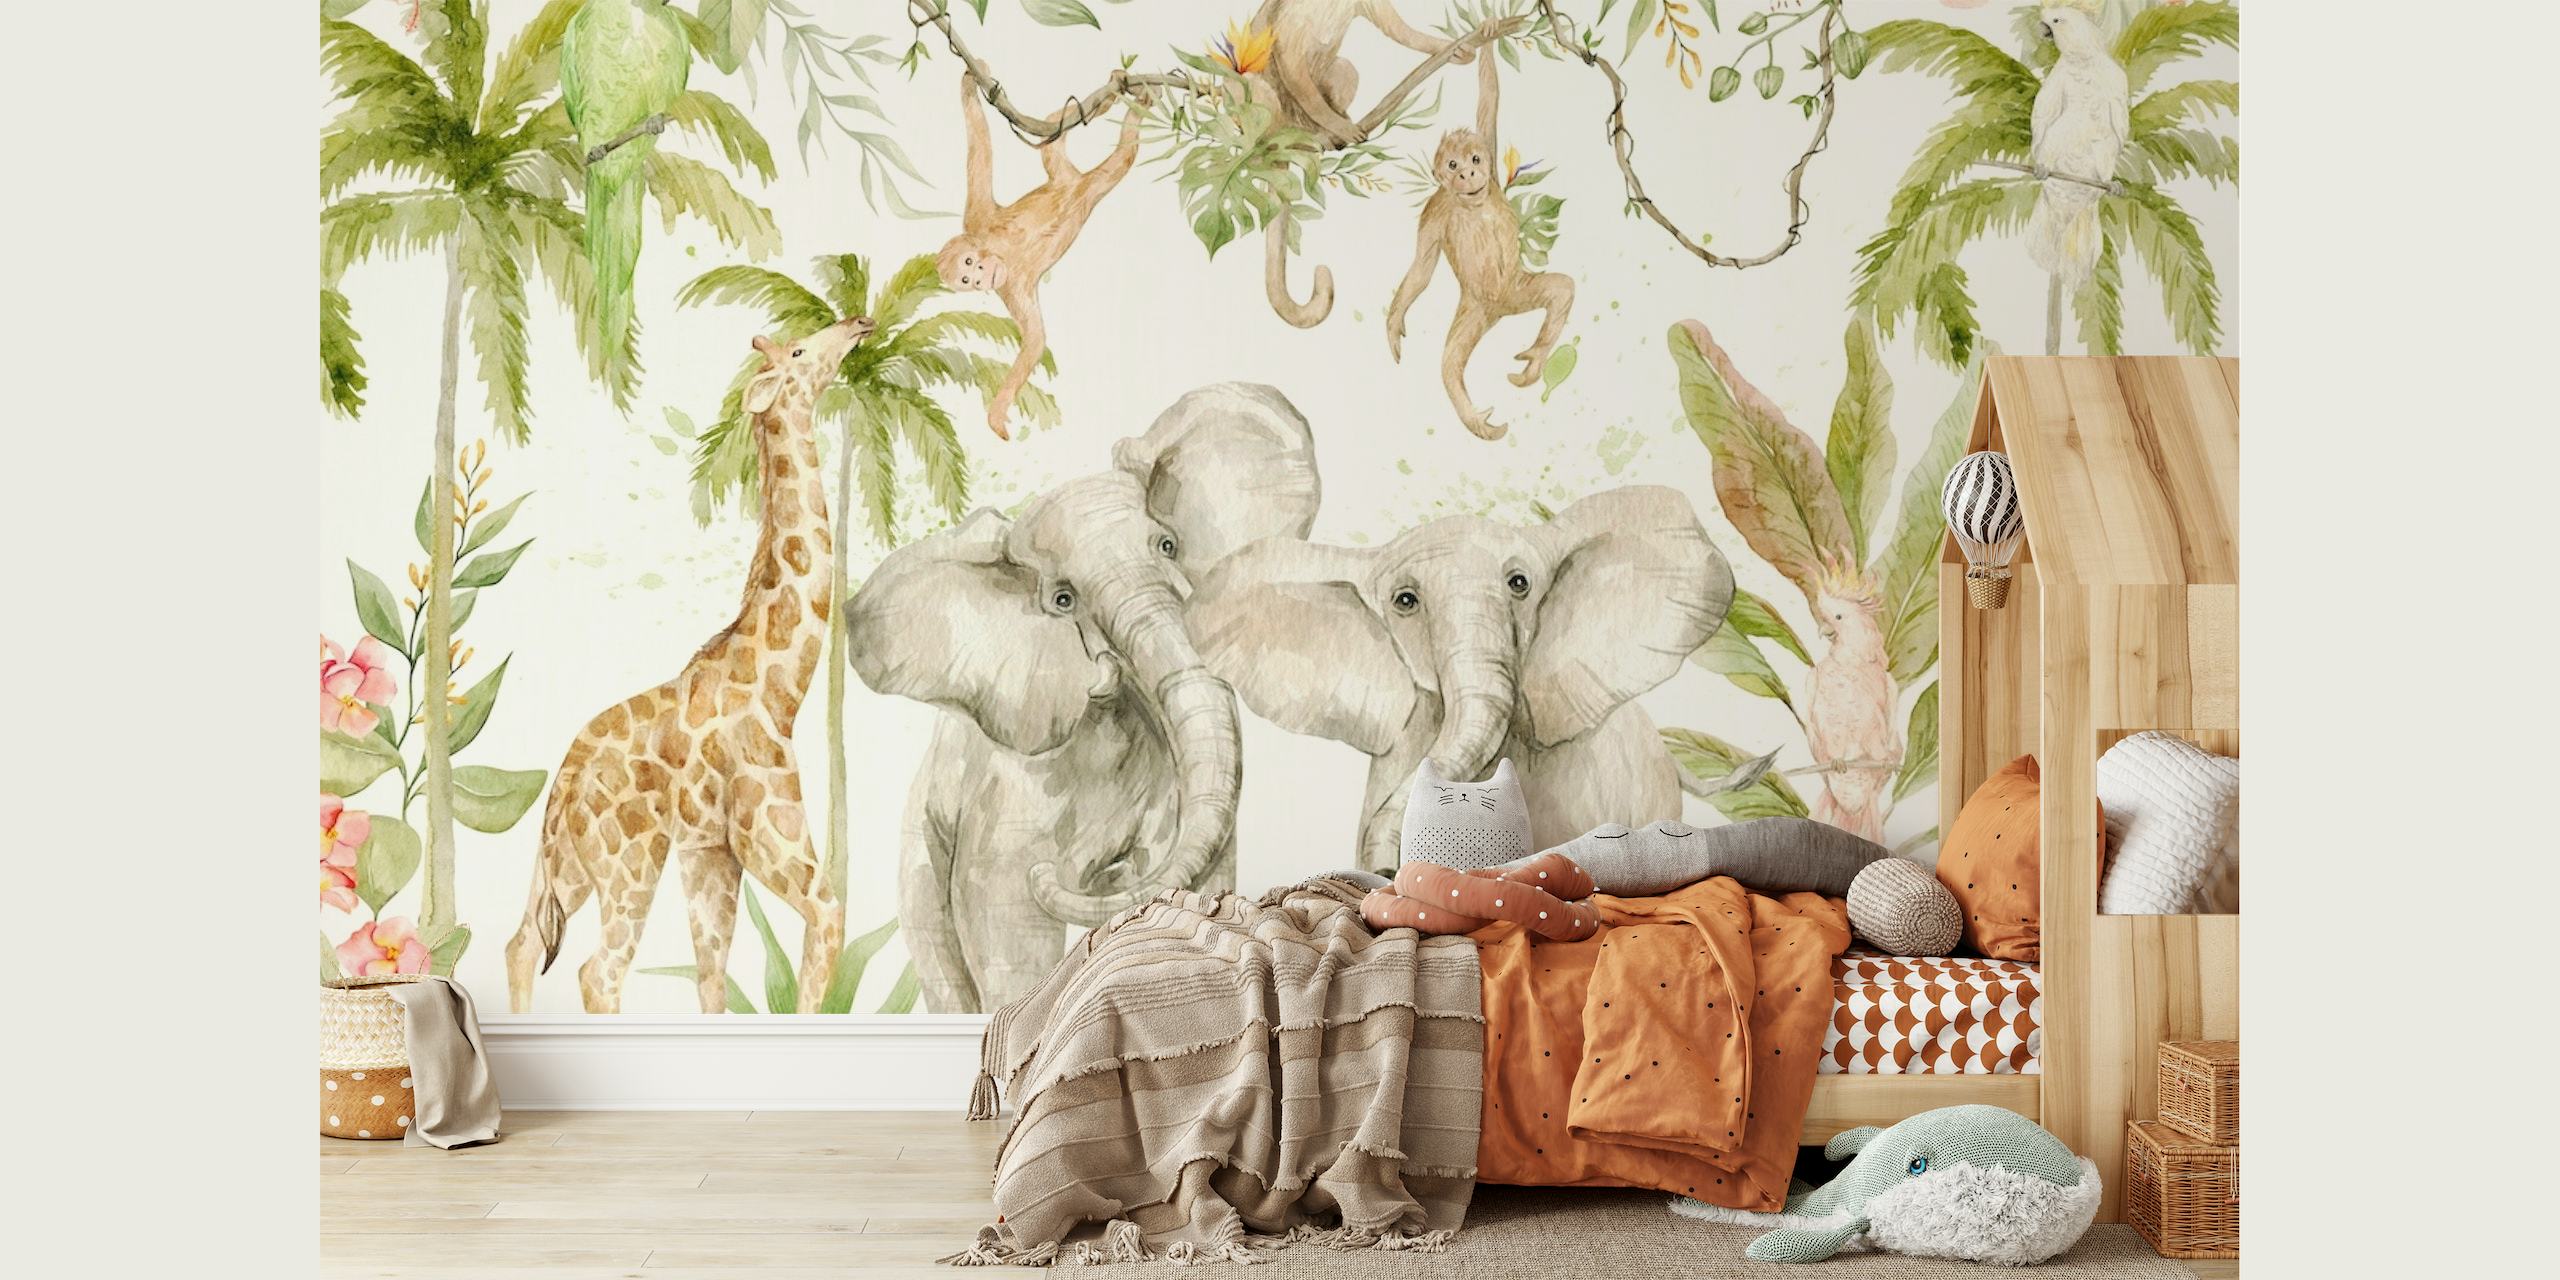 Ručně malovaná fototapeta tropického safari v džungli se slony, žirafami a opicemi uprostřed zeleně